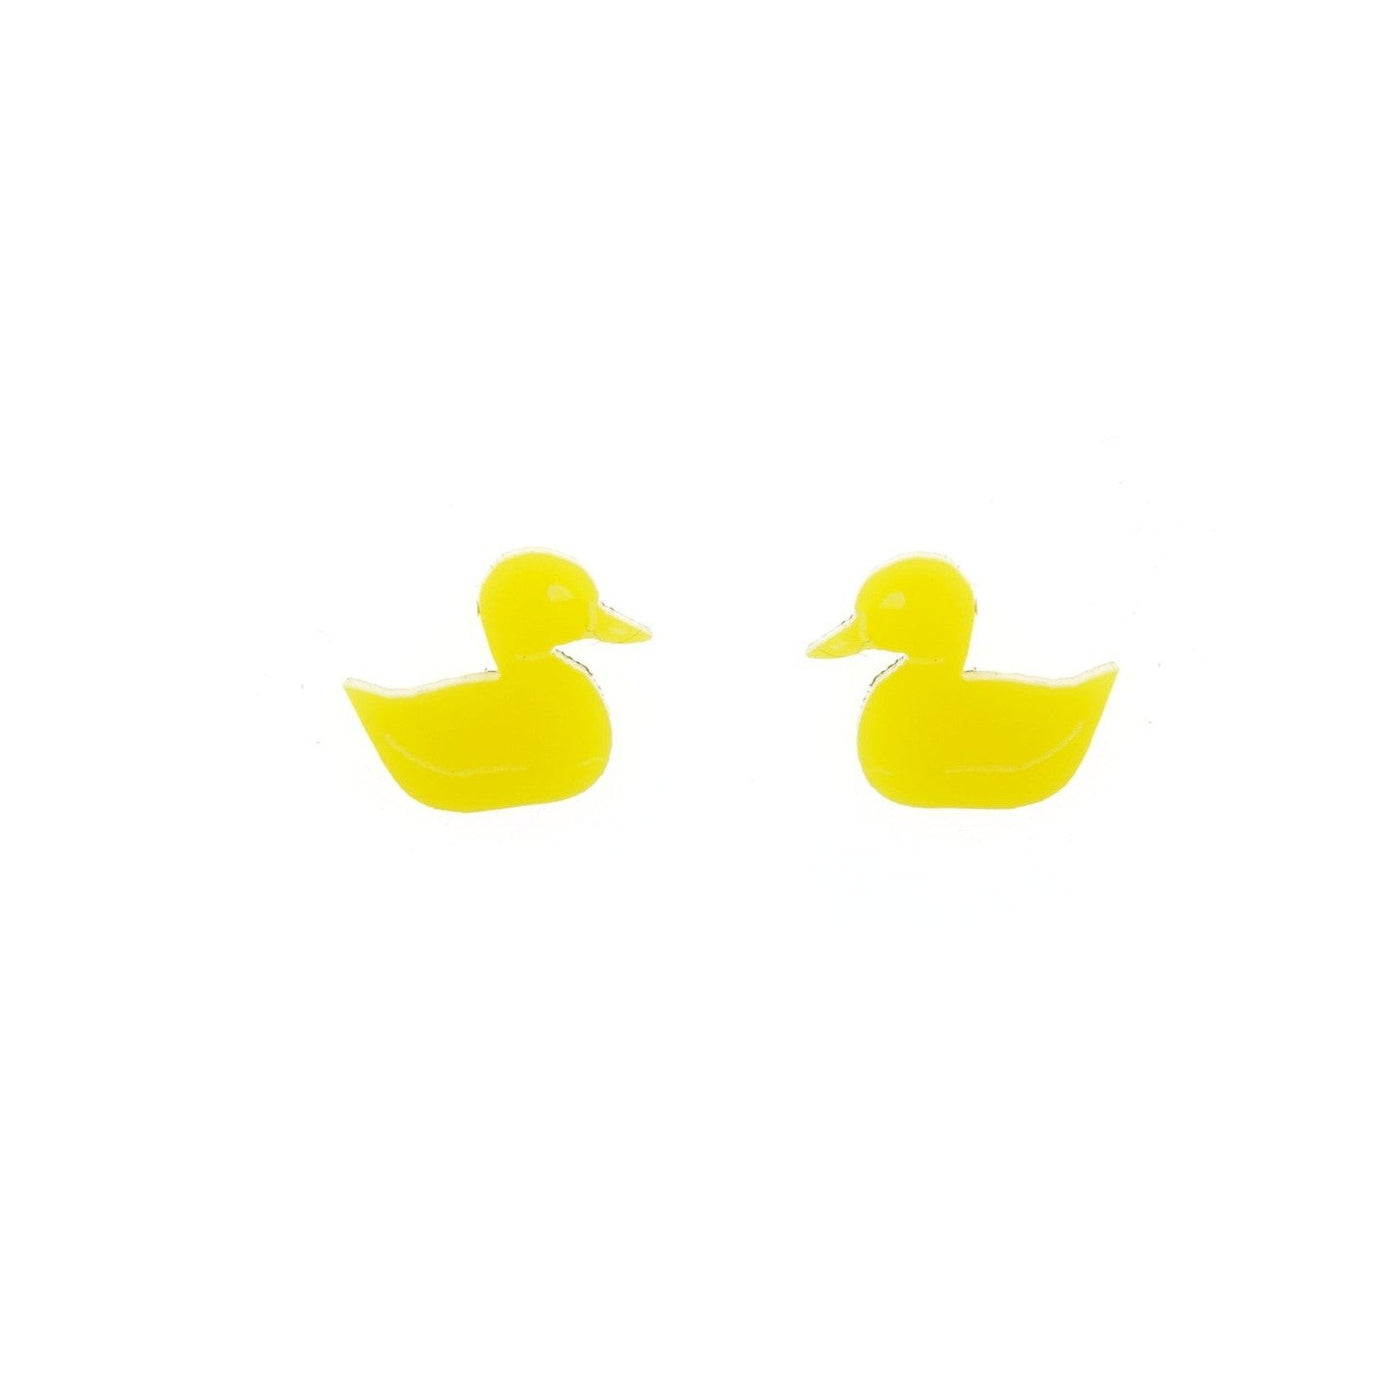 SALE! Ducky Earrings in Yellow